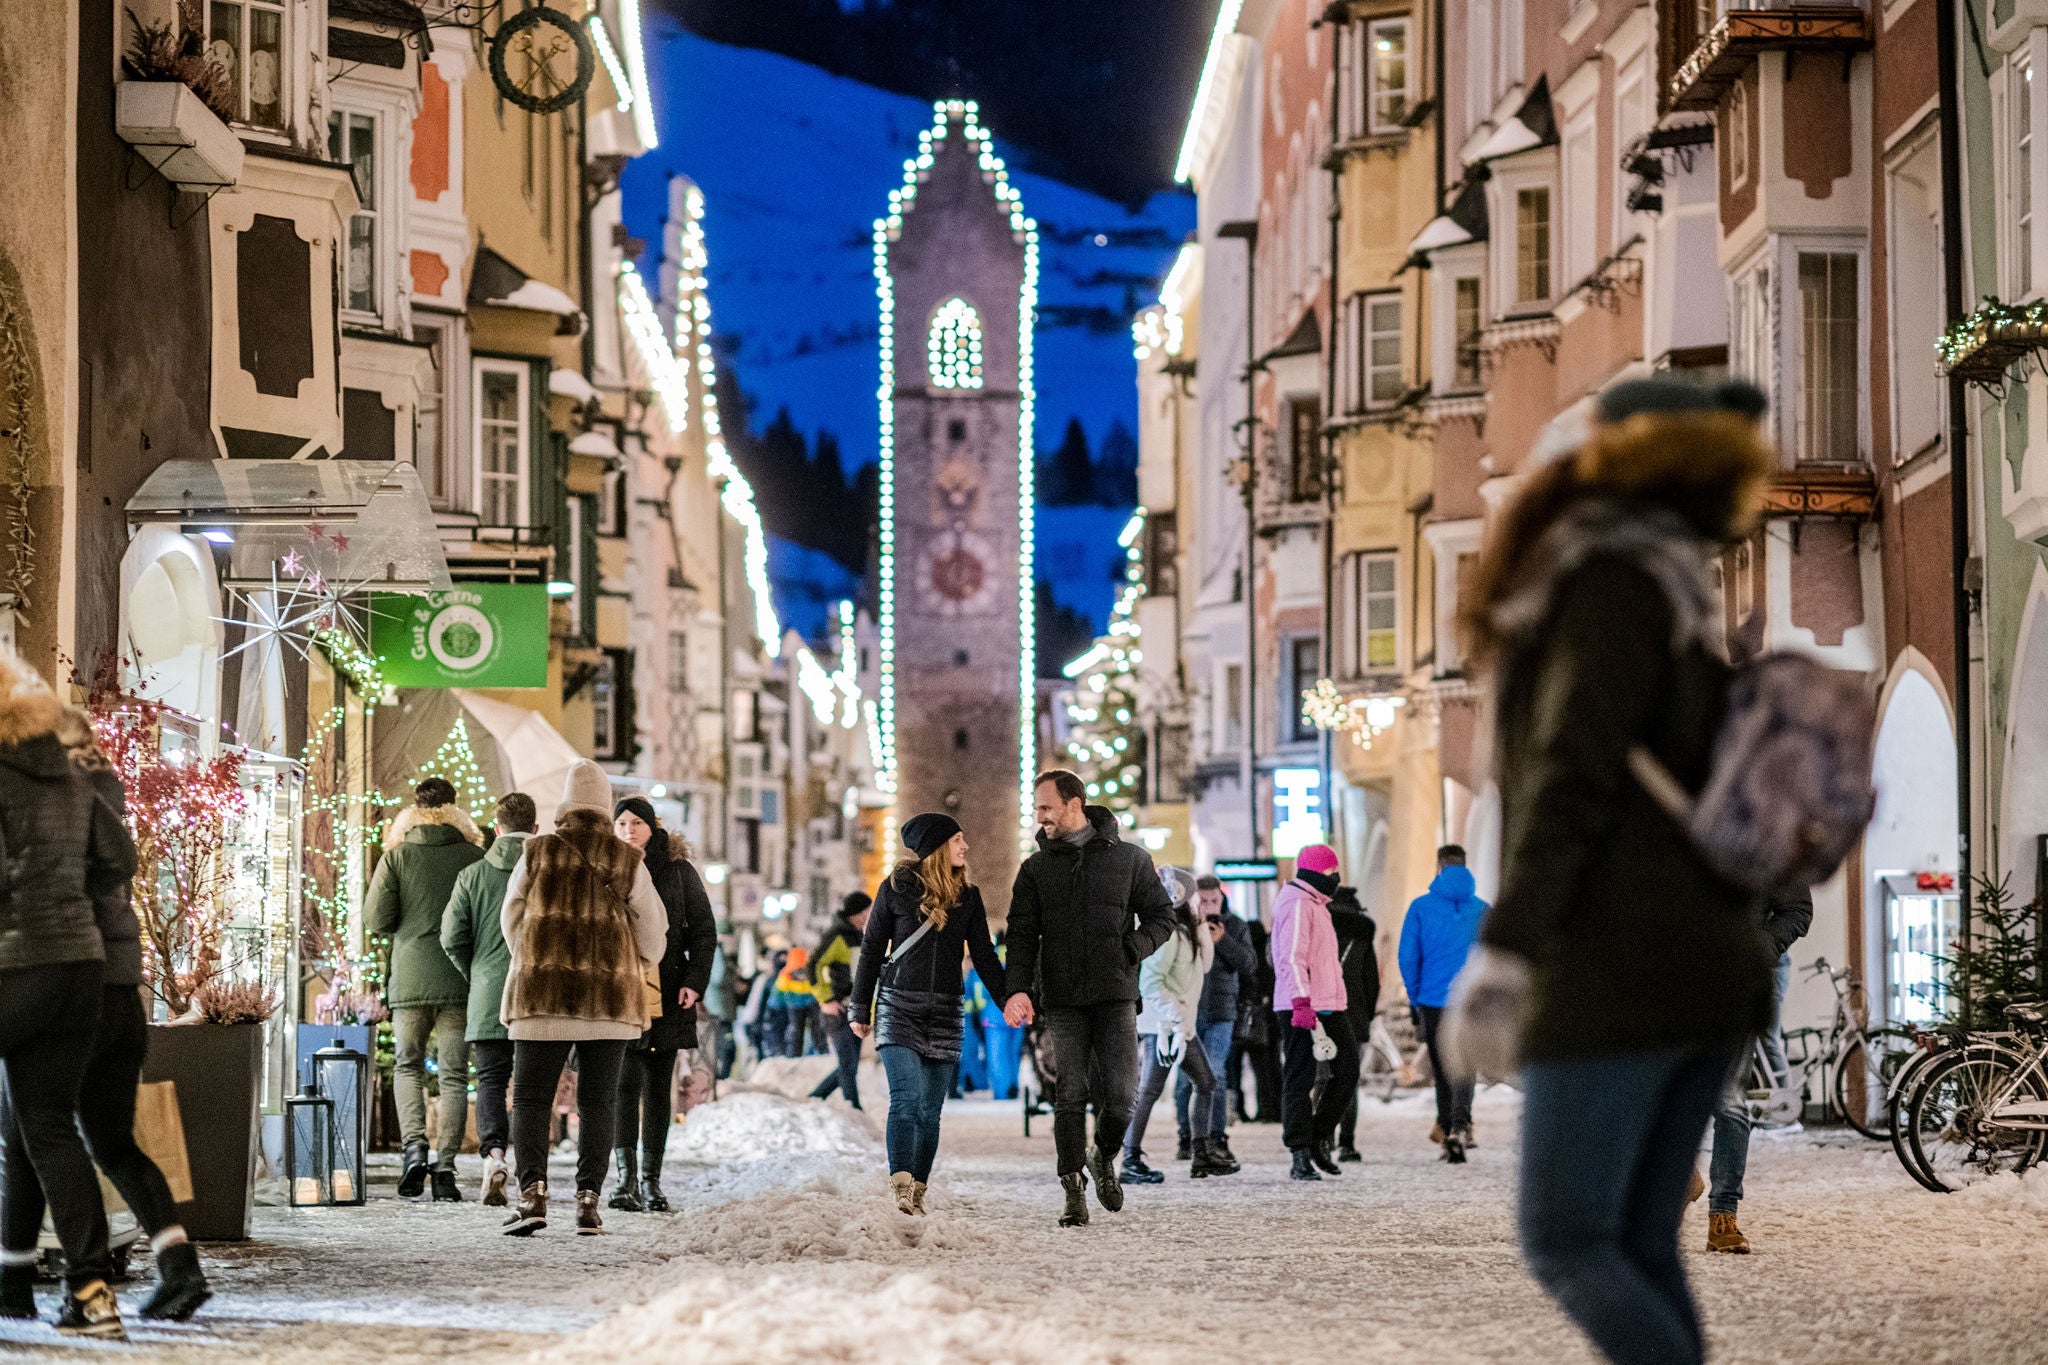 Die historische Stadtgasse von Sterzing mit beleuchtetem ZwÃ¶lfertrum an einem Winterabend mit bummelnden Menschen.